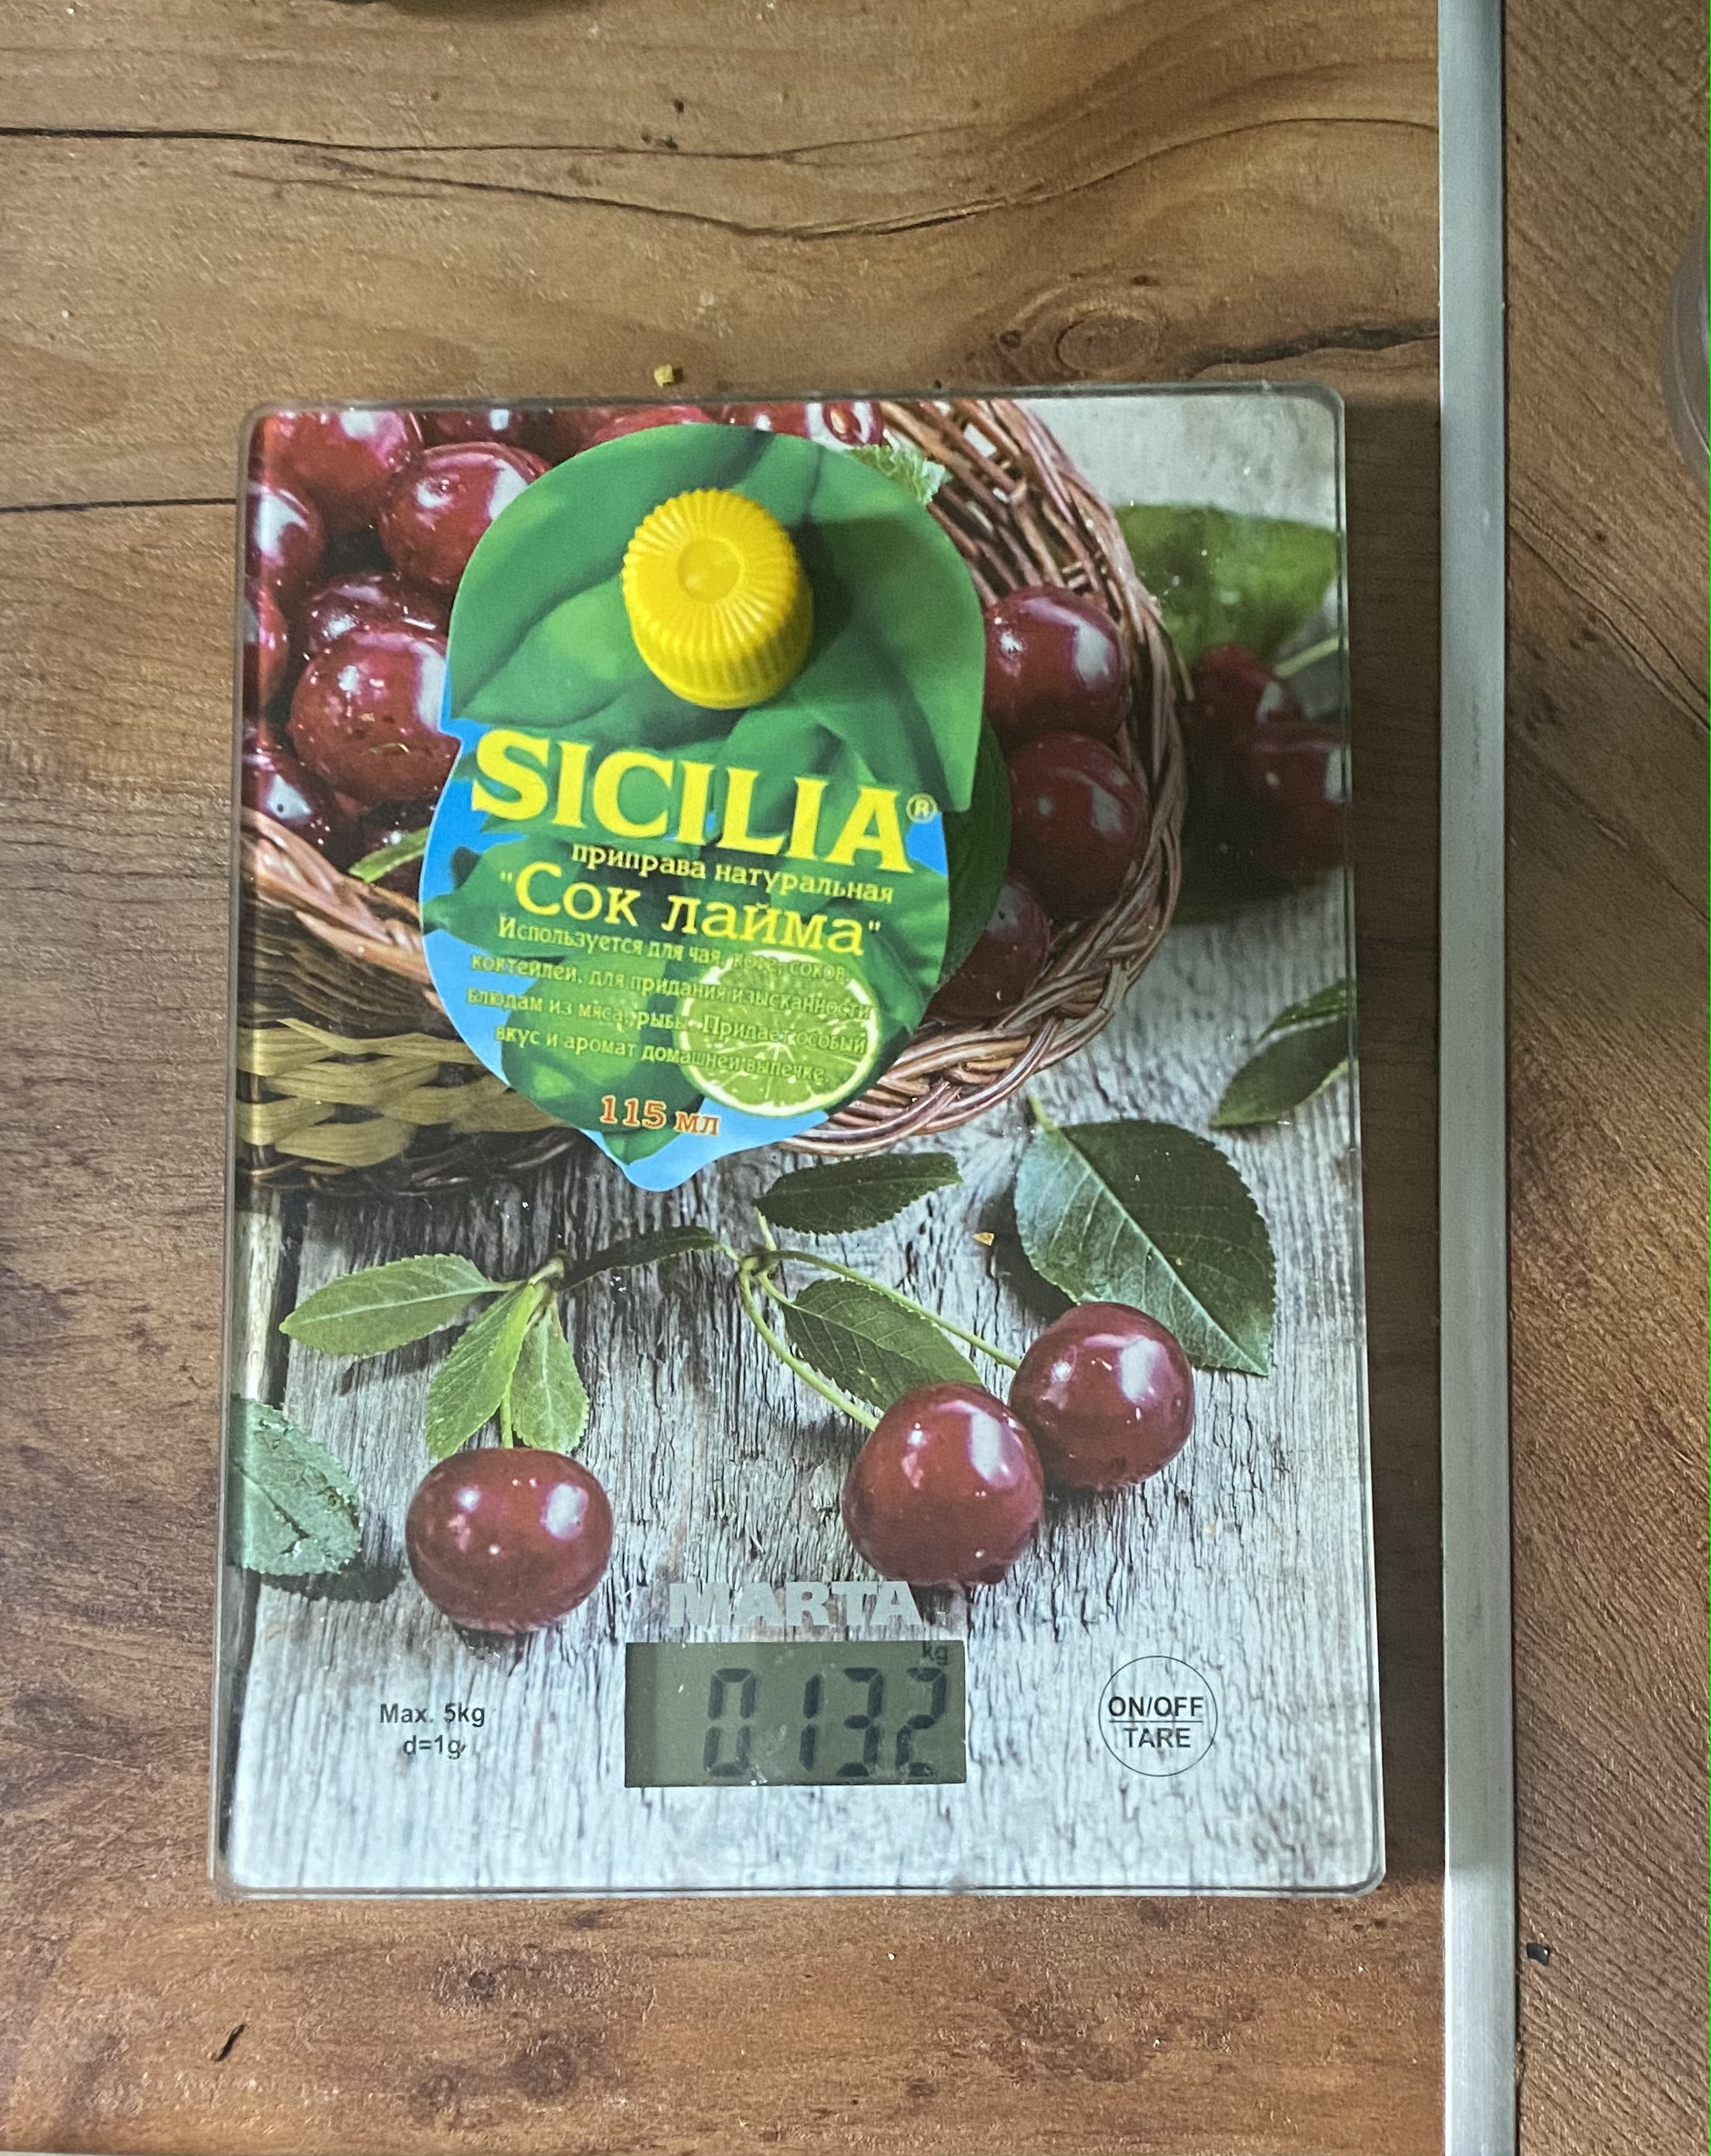 вес сок лайма sicilia